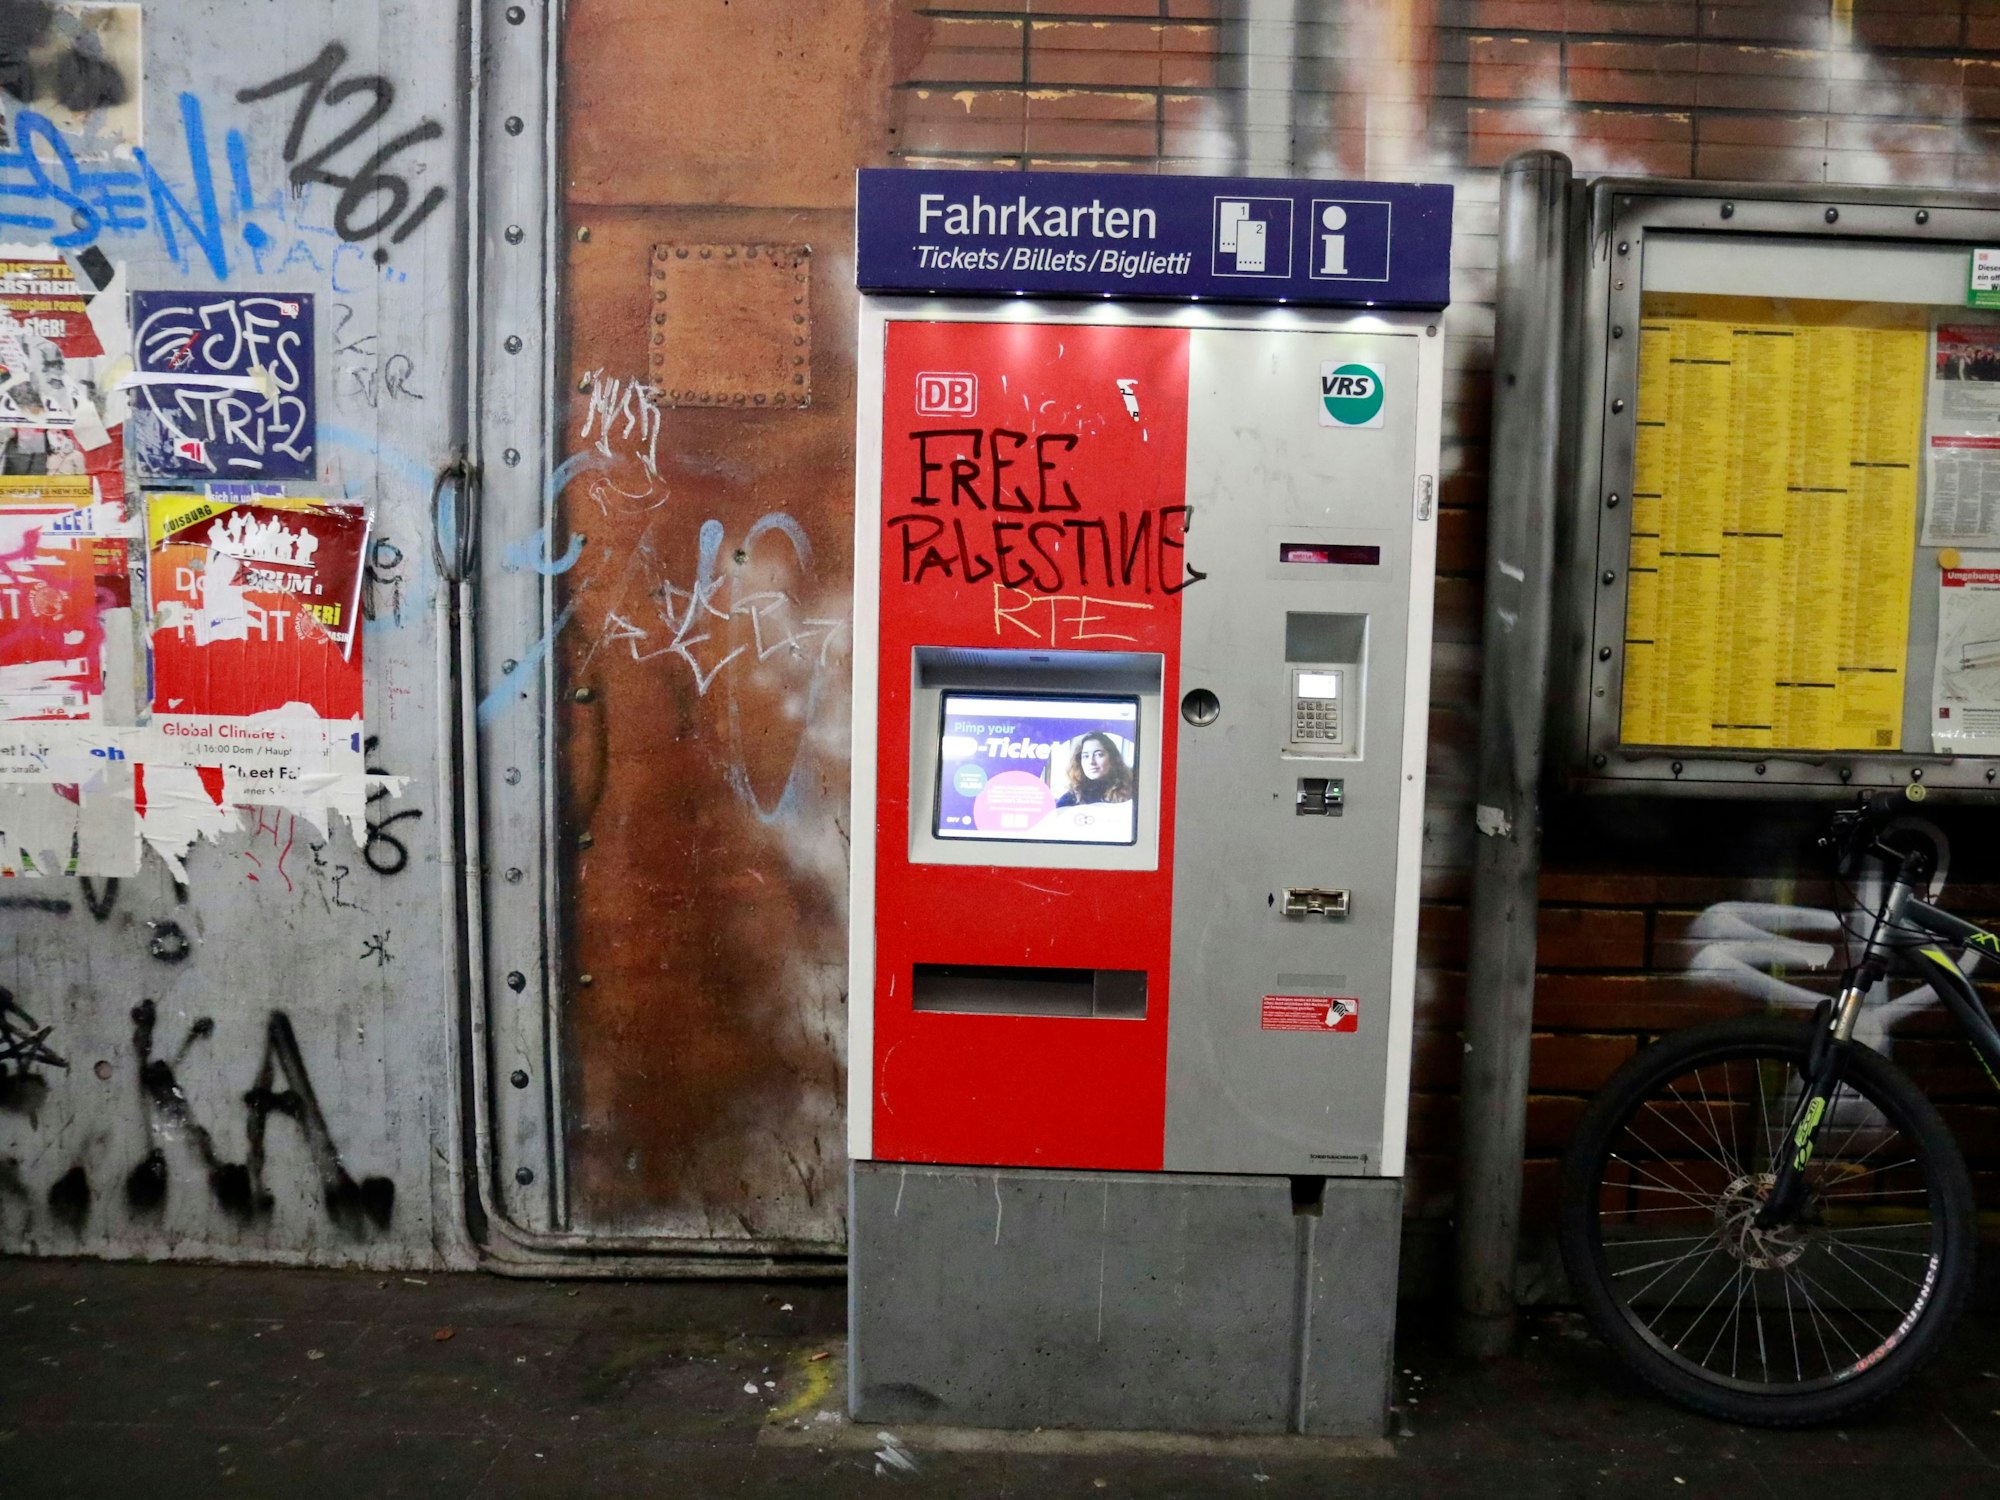 Ein vollgeschmierter Fahrkartenautomat im Bahnhof Köln-Ehrenfeld.